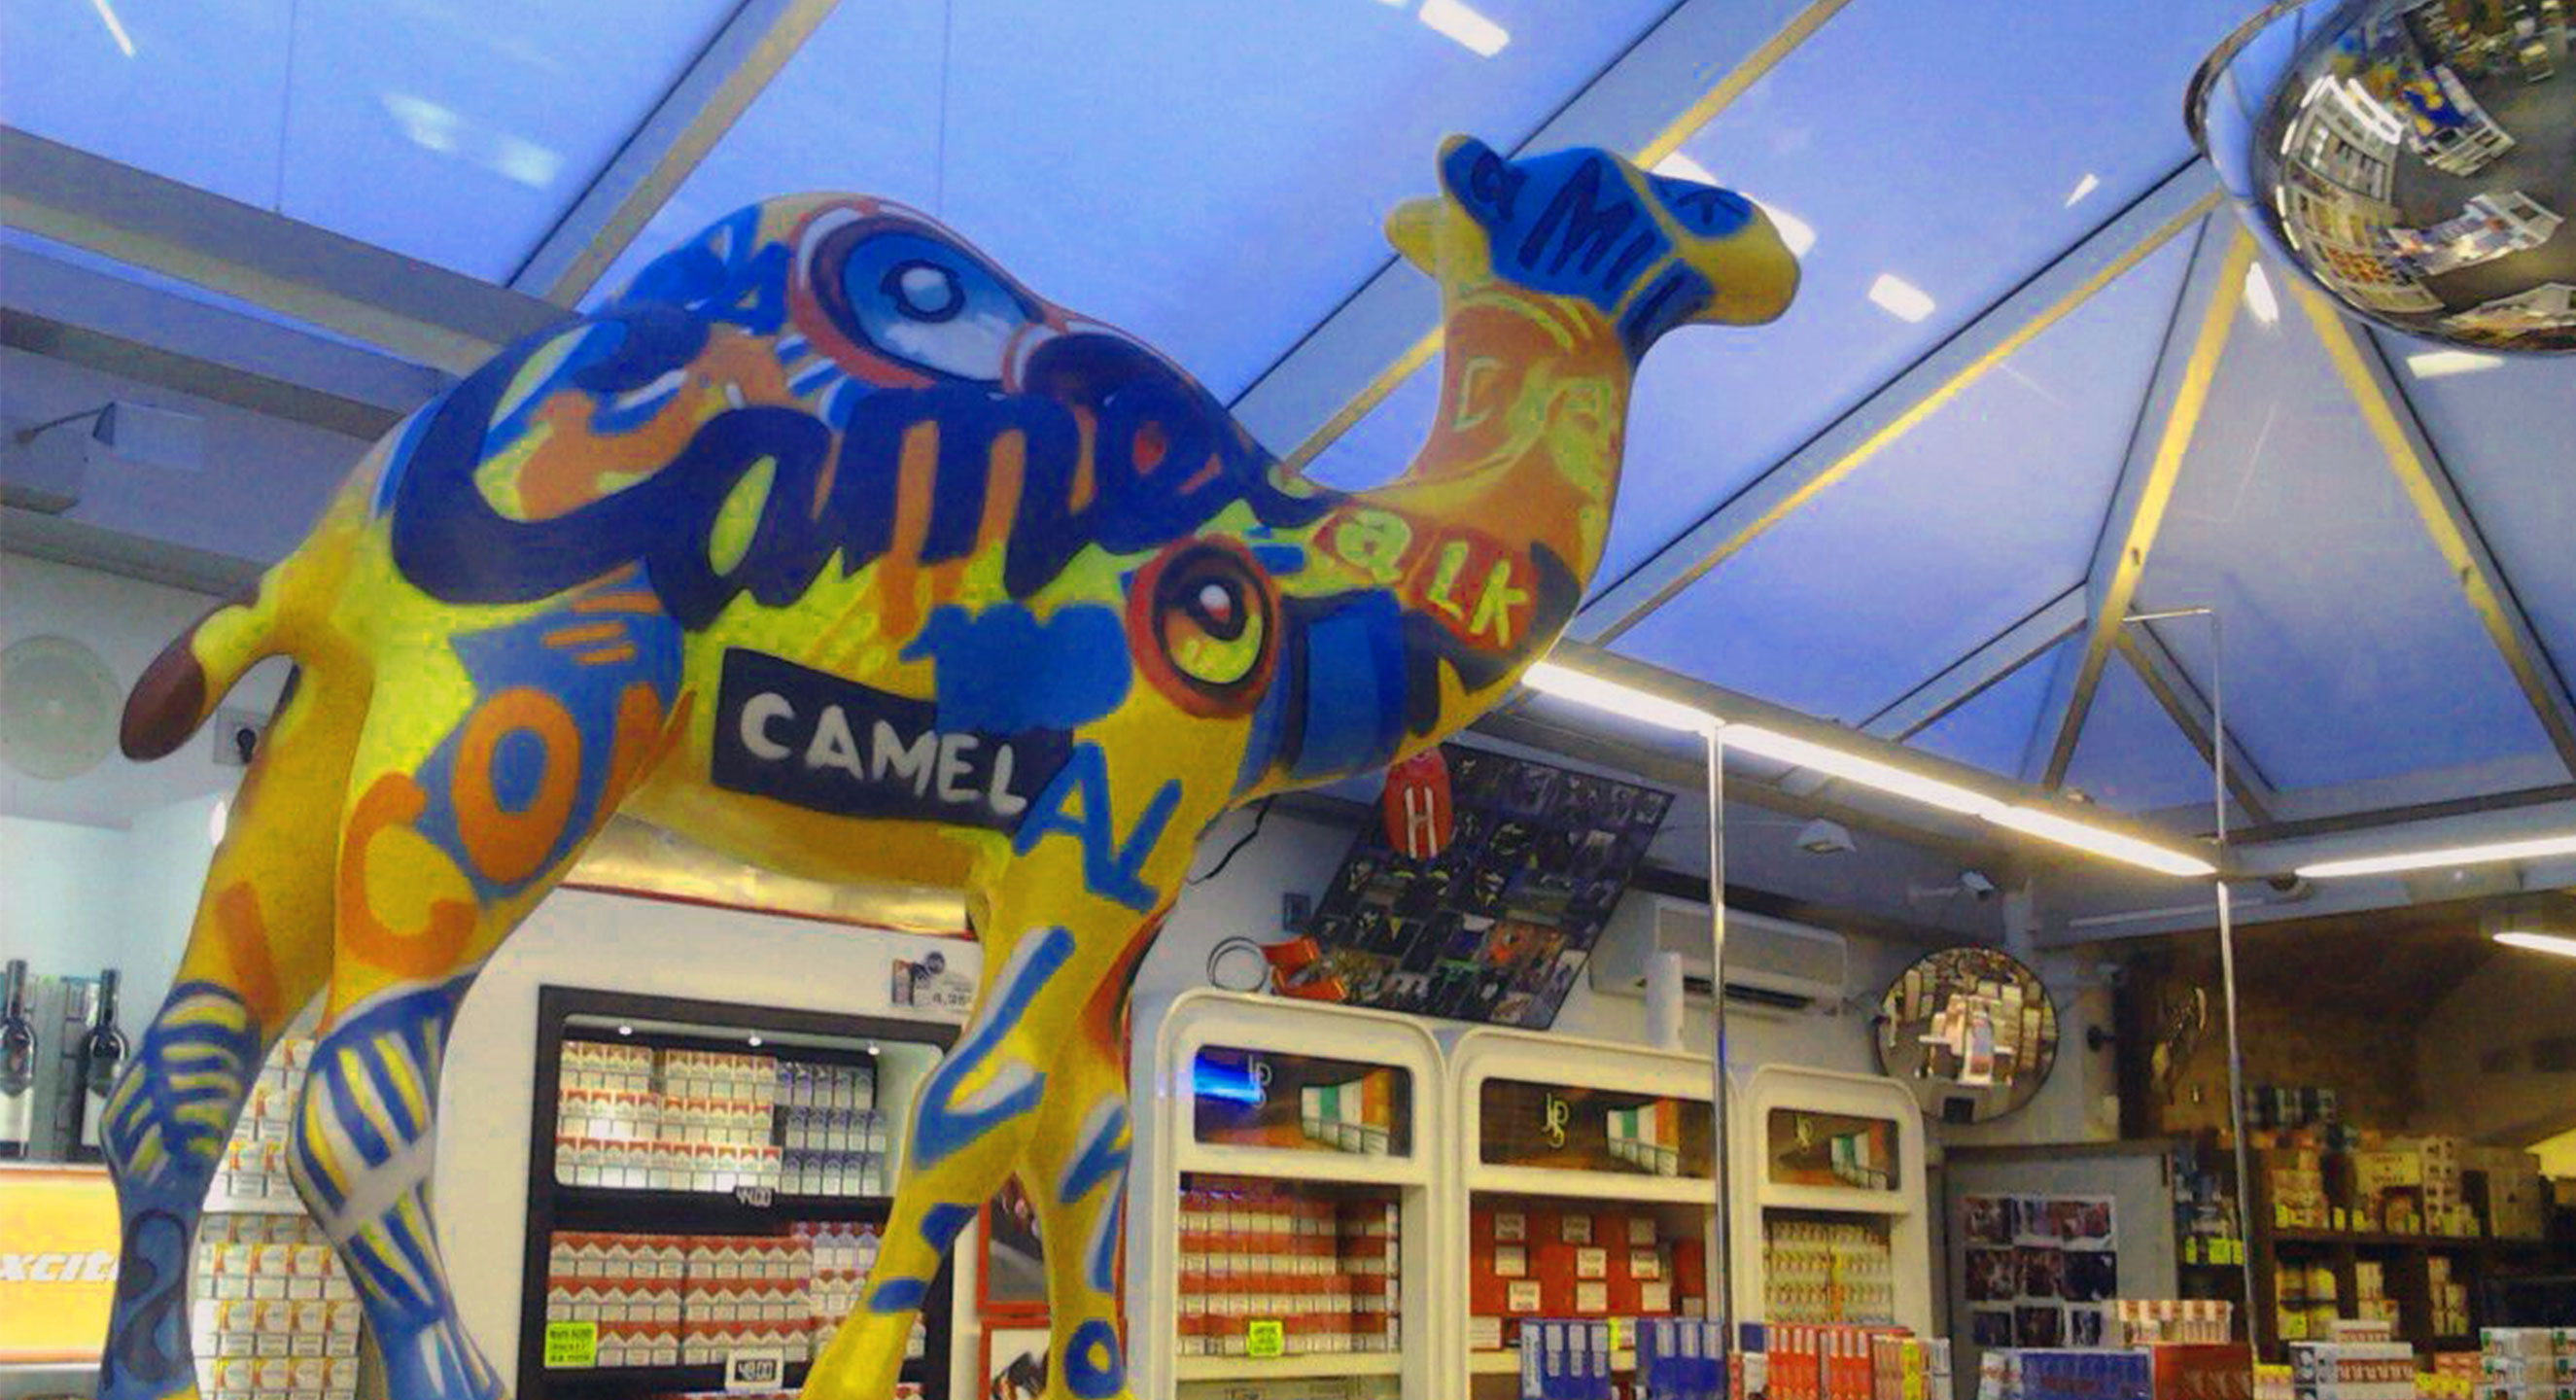 Campaña Camel